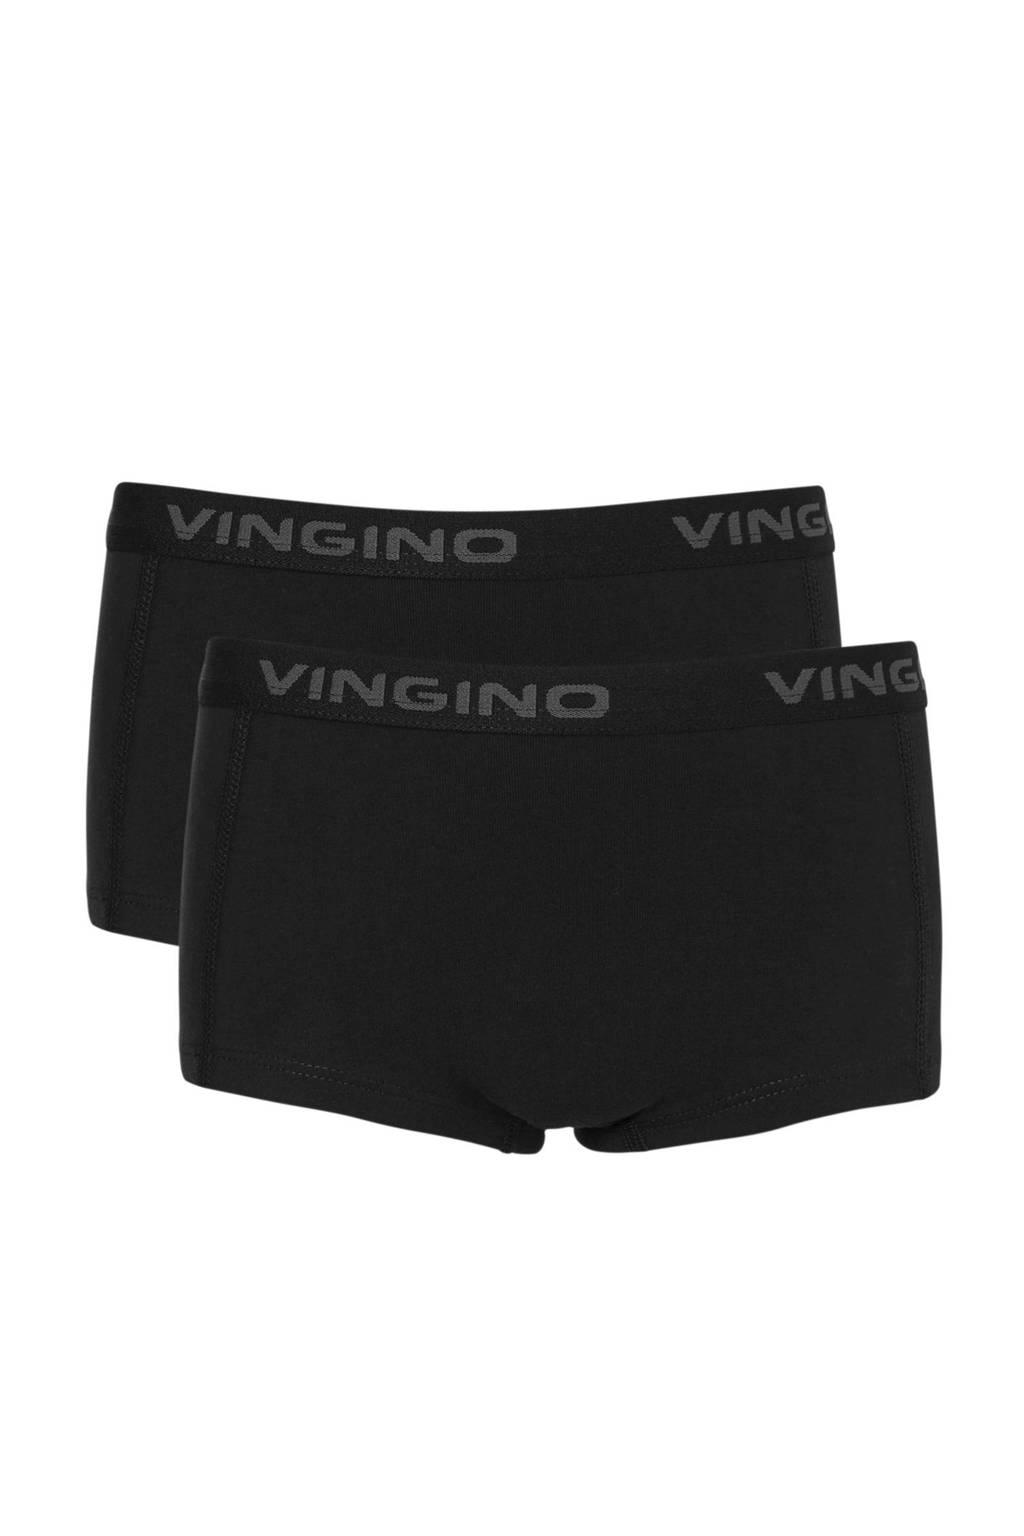 Vingino short - set van 2 zwart